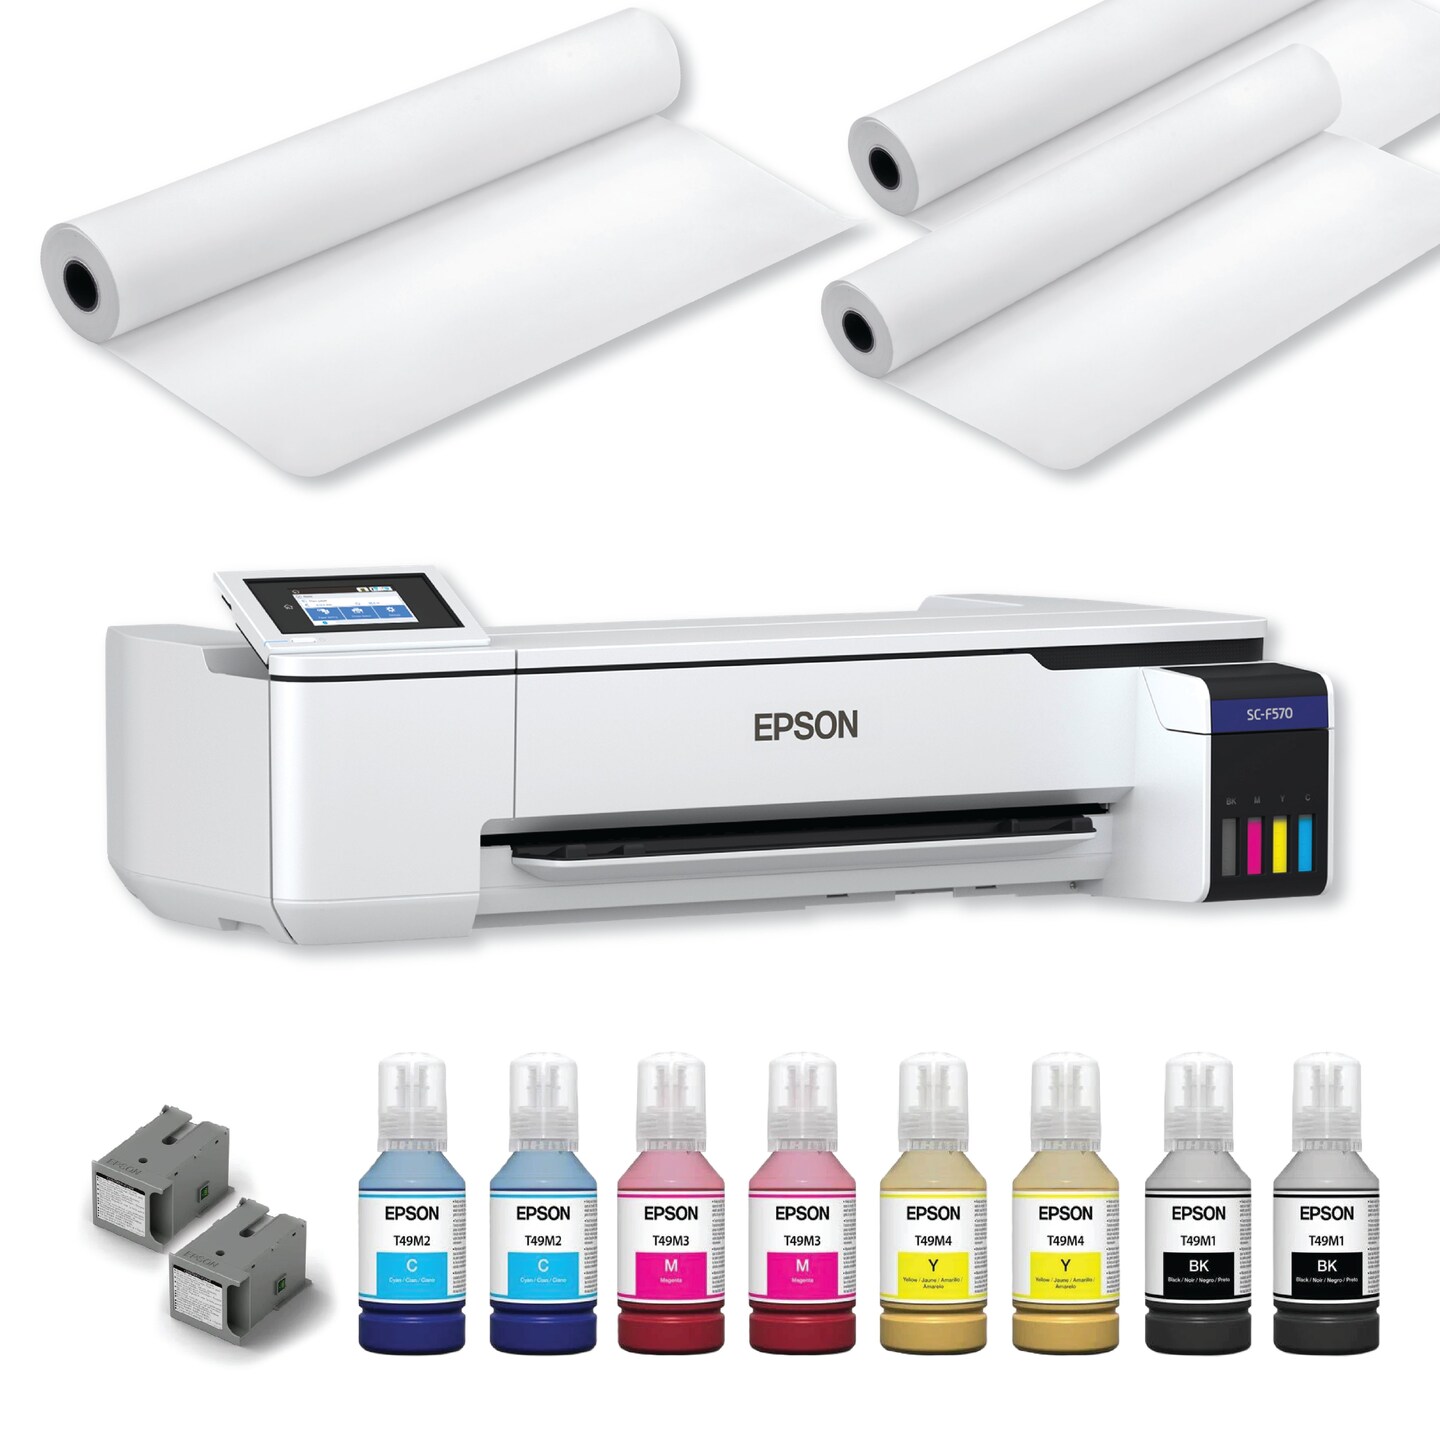 Epson ® SureColor F570 Pro Sublimation Printer